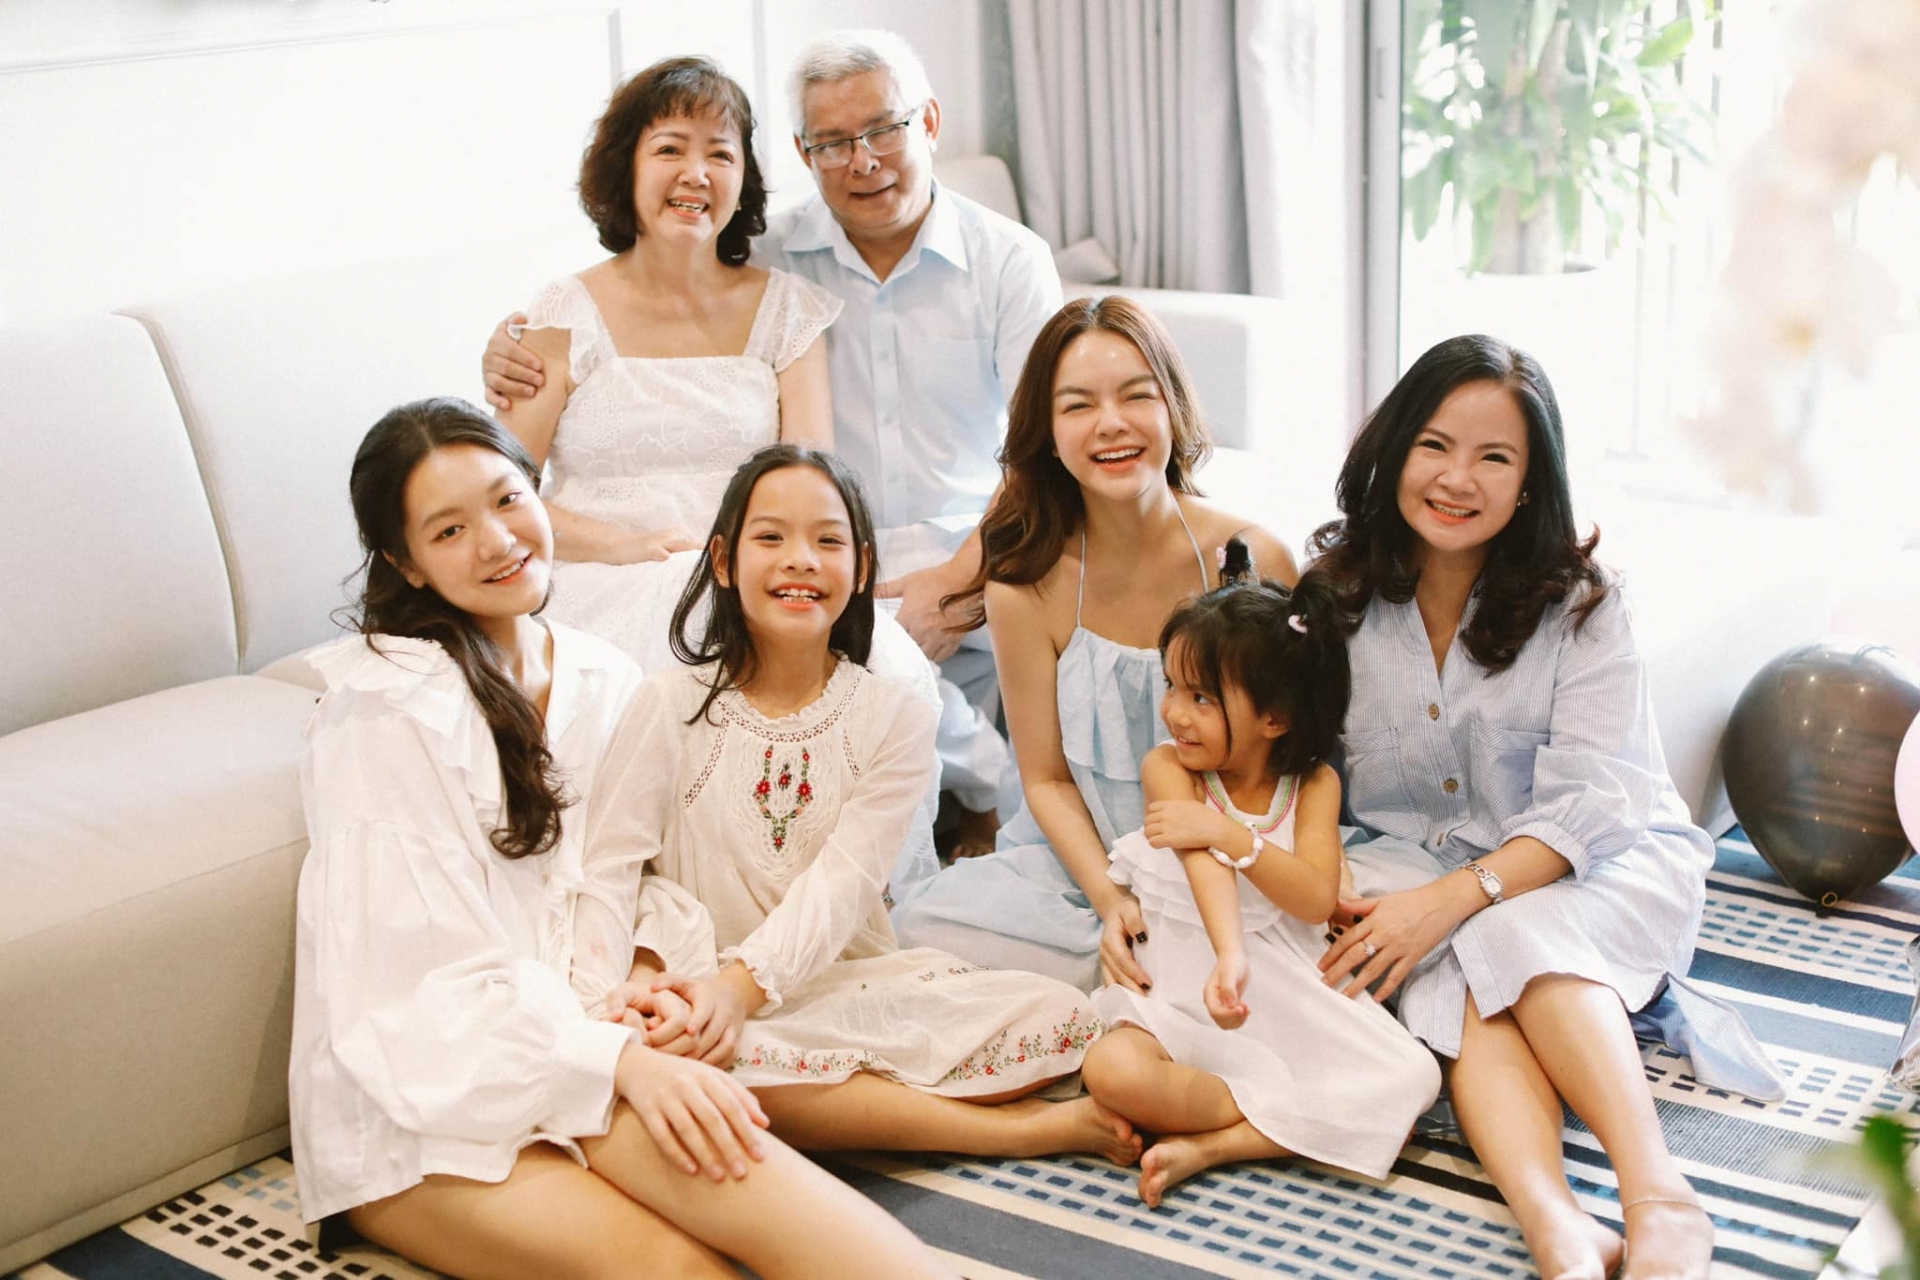 Phạm Quỳnh Anh chia sẻ xúc động về gia đình, xem ảnh mới thấy gia đình toàn mĩ nhân - Ảnh 3